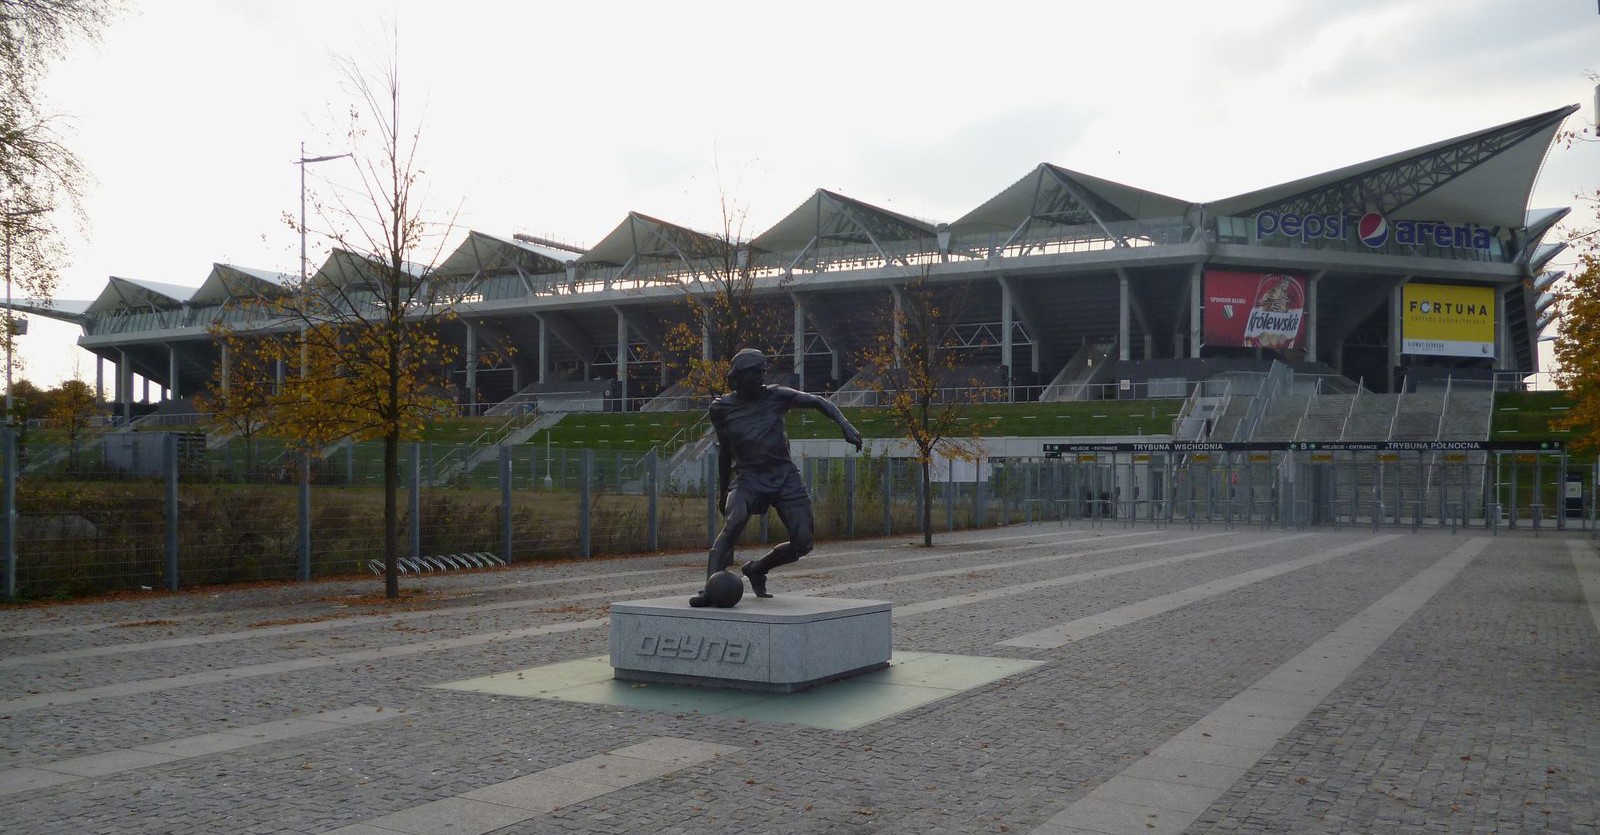 Stadion Wojska Polskiego